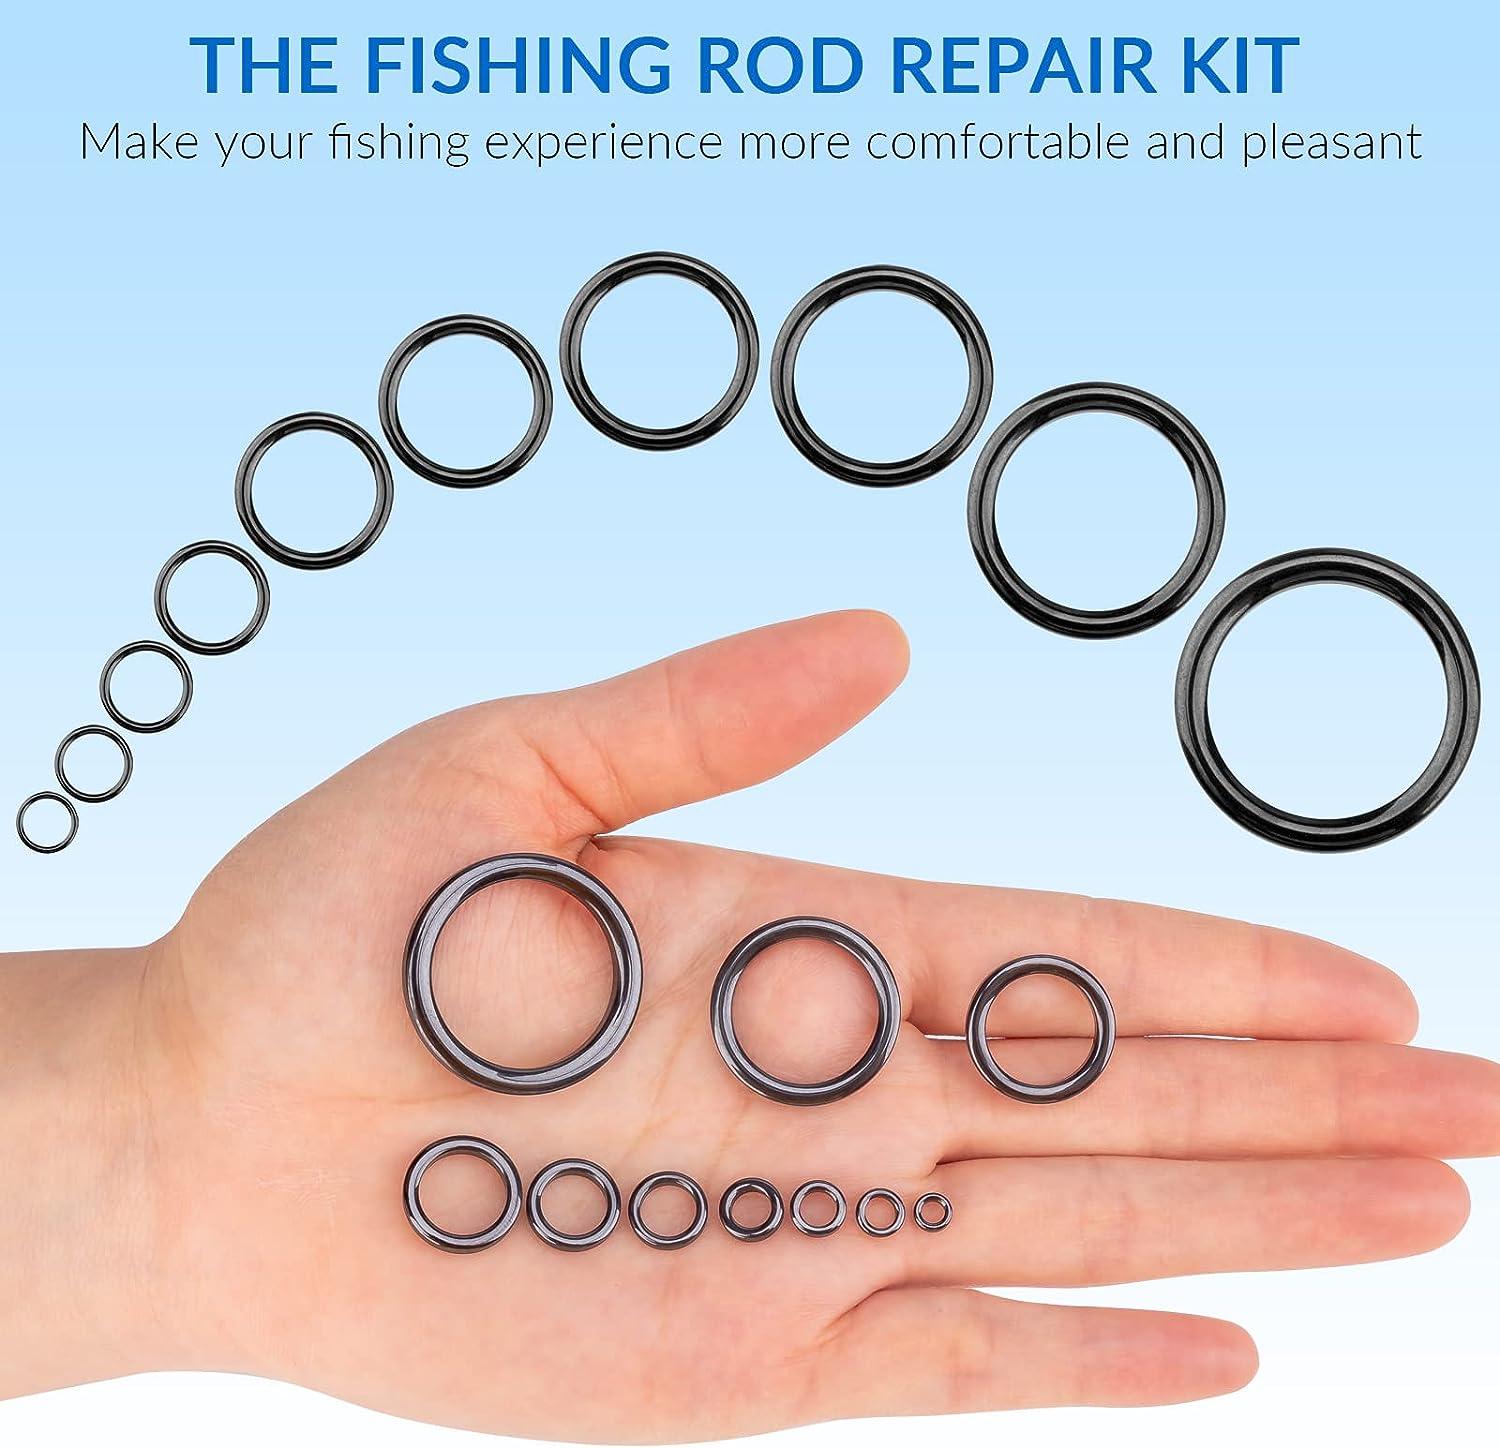 THKFISH Rod Repair Kit Rod Tip Repair Kit Ceramics Tips Stainless Steel  Carbon Spinning Rod Guides Fishing Rod Repair Kit 35pcs / 75pcs / 40pcs  C-Black Guides Ring 40pcs